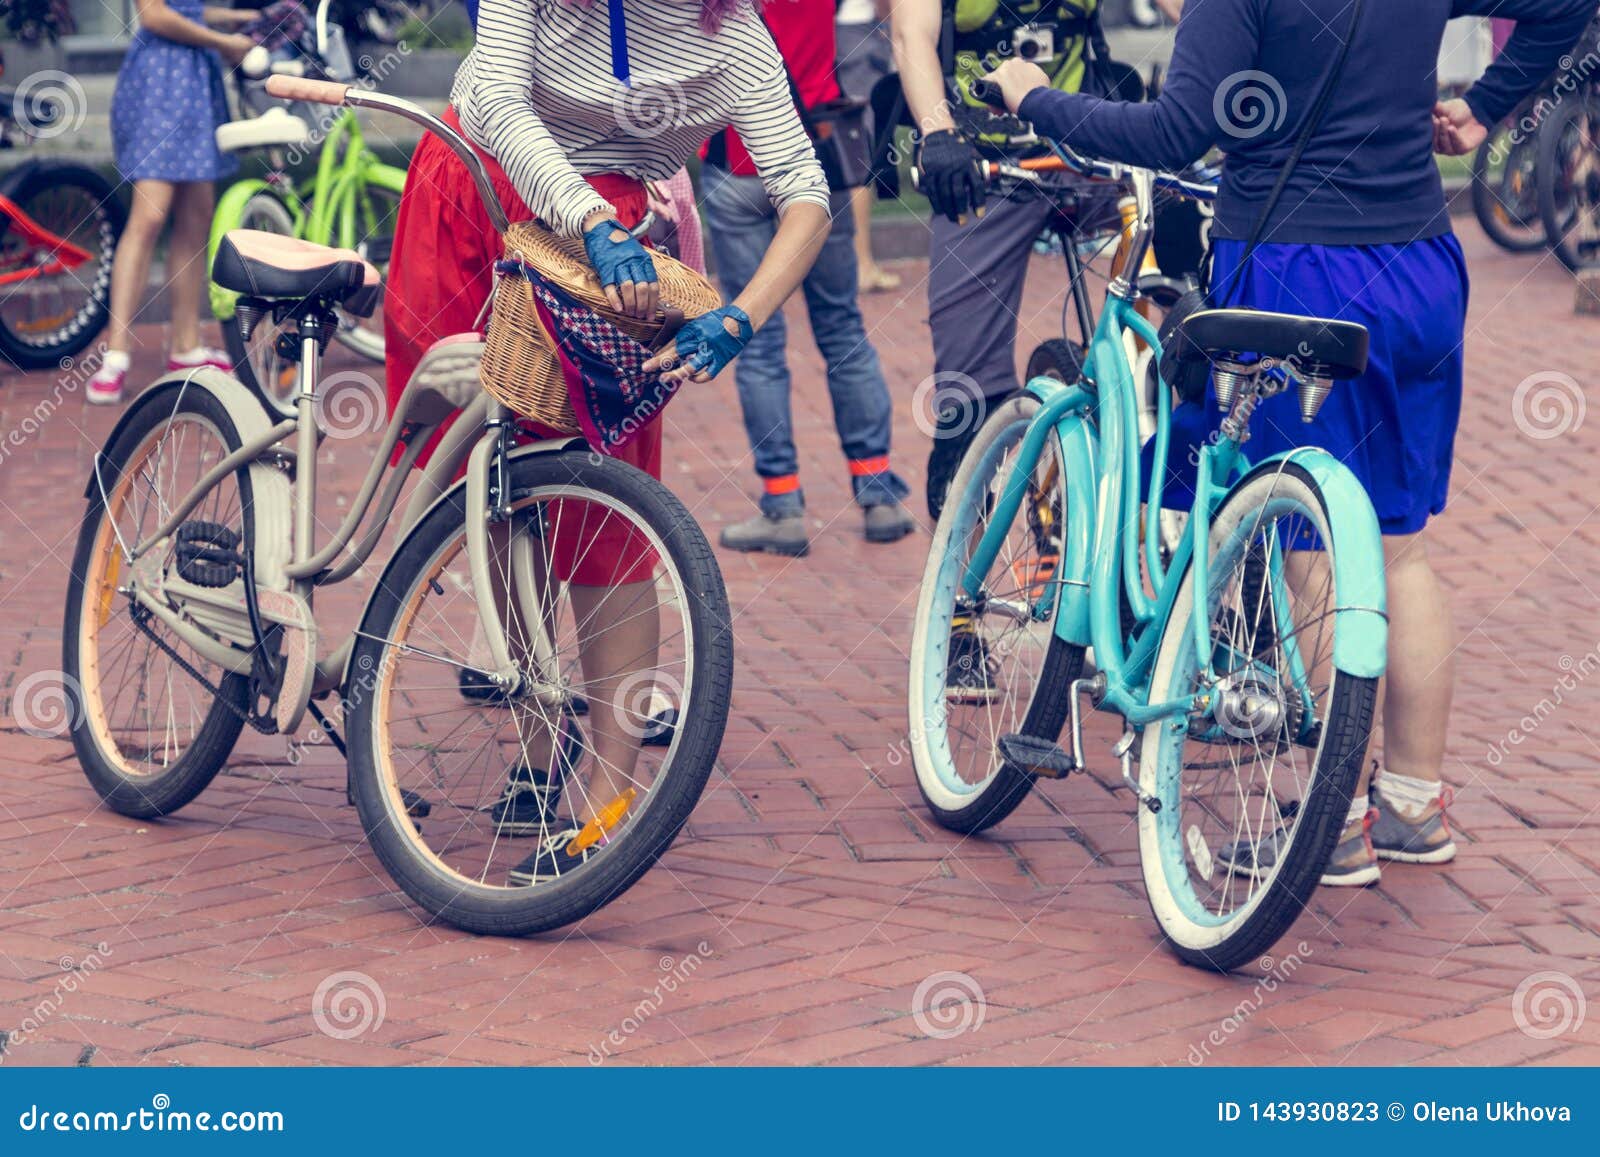 bicicletta citta ragazza marce